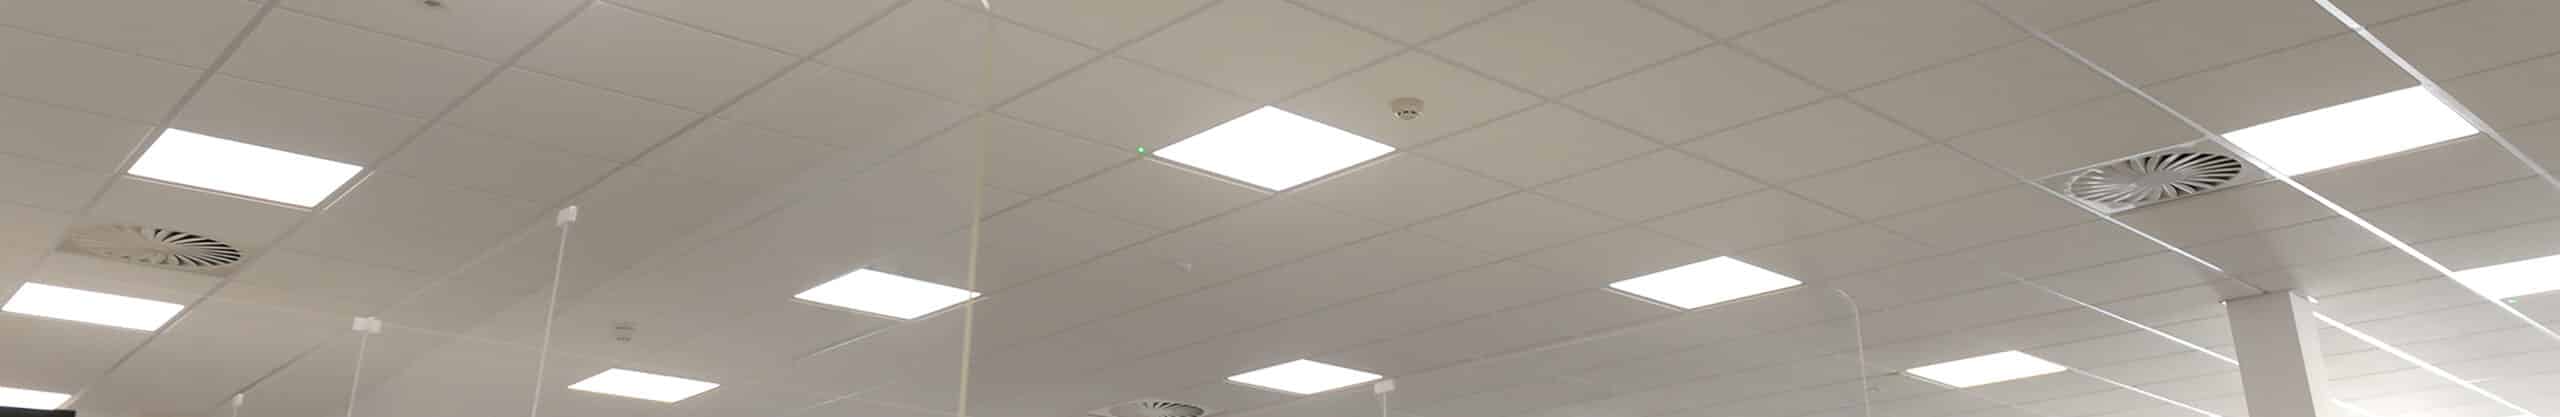 LED Back Lit Ceiling Panel